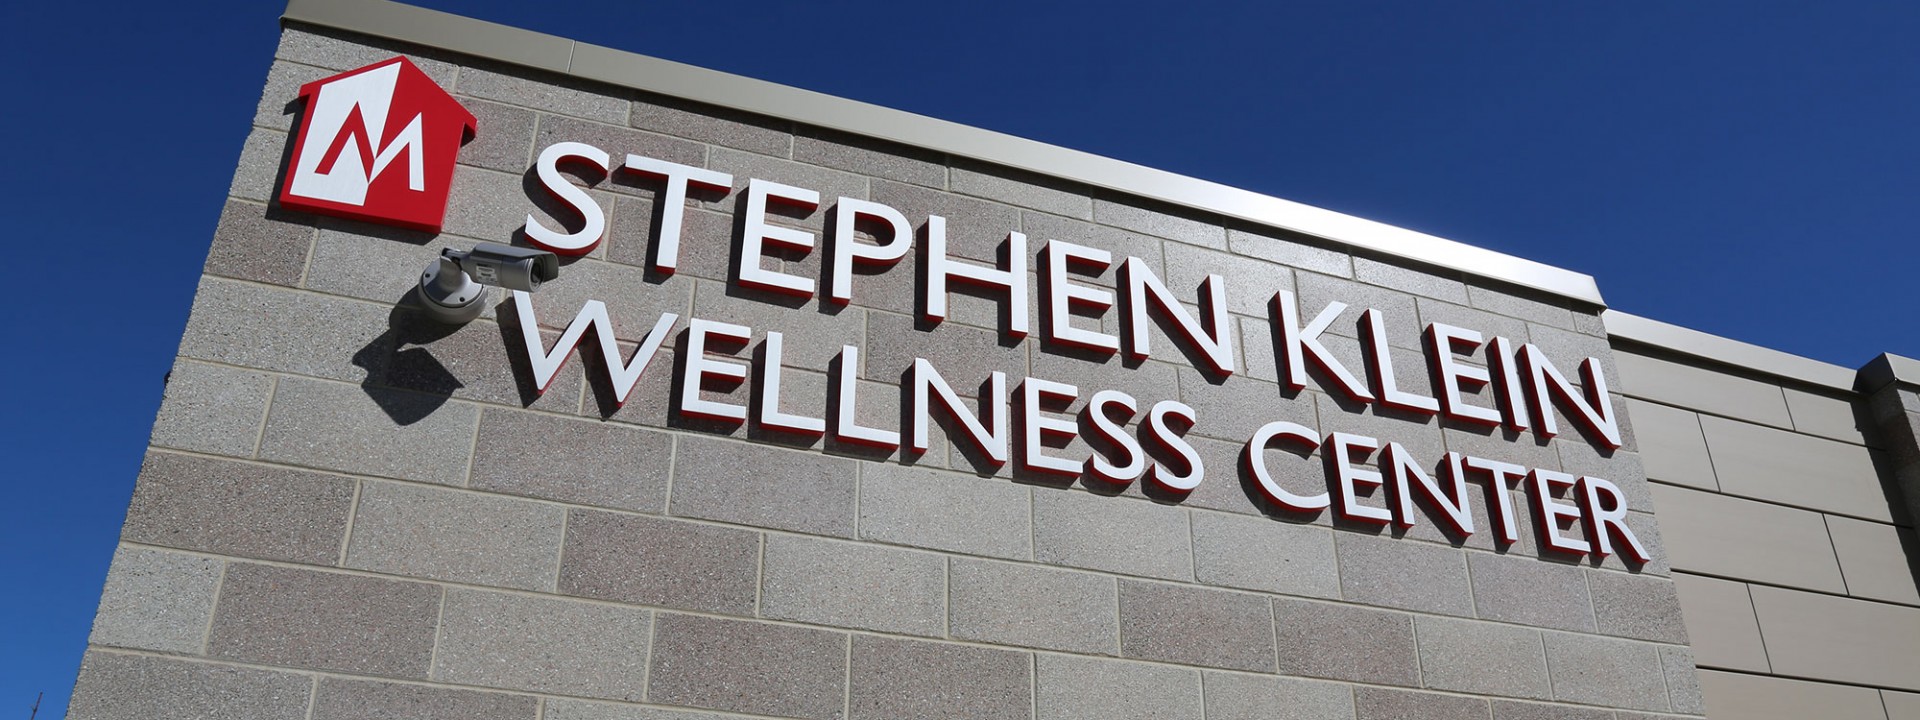 Stephen Klein Wellness Center